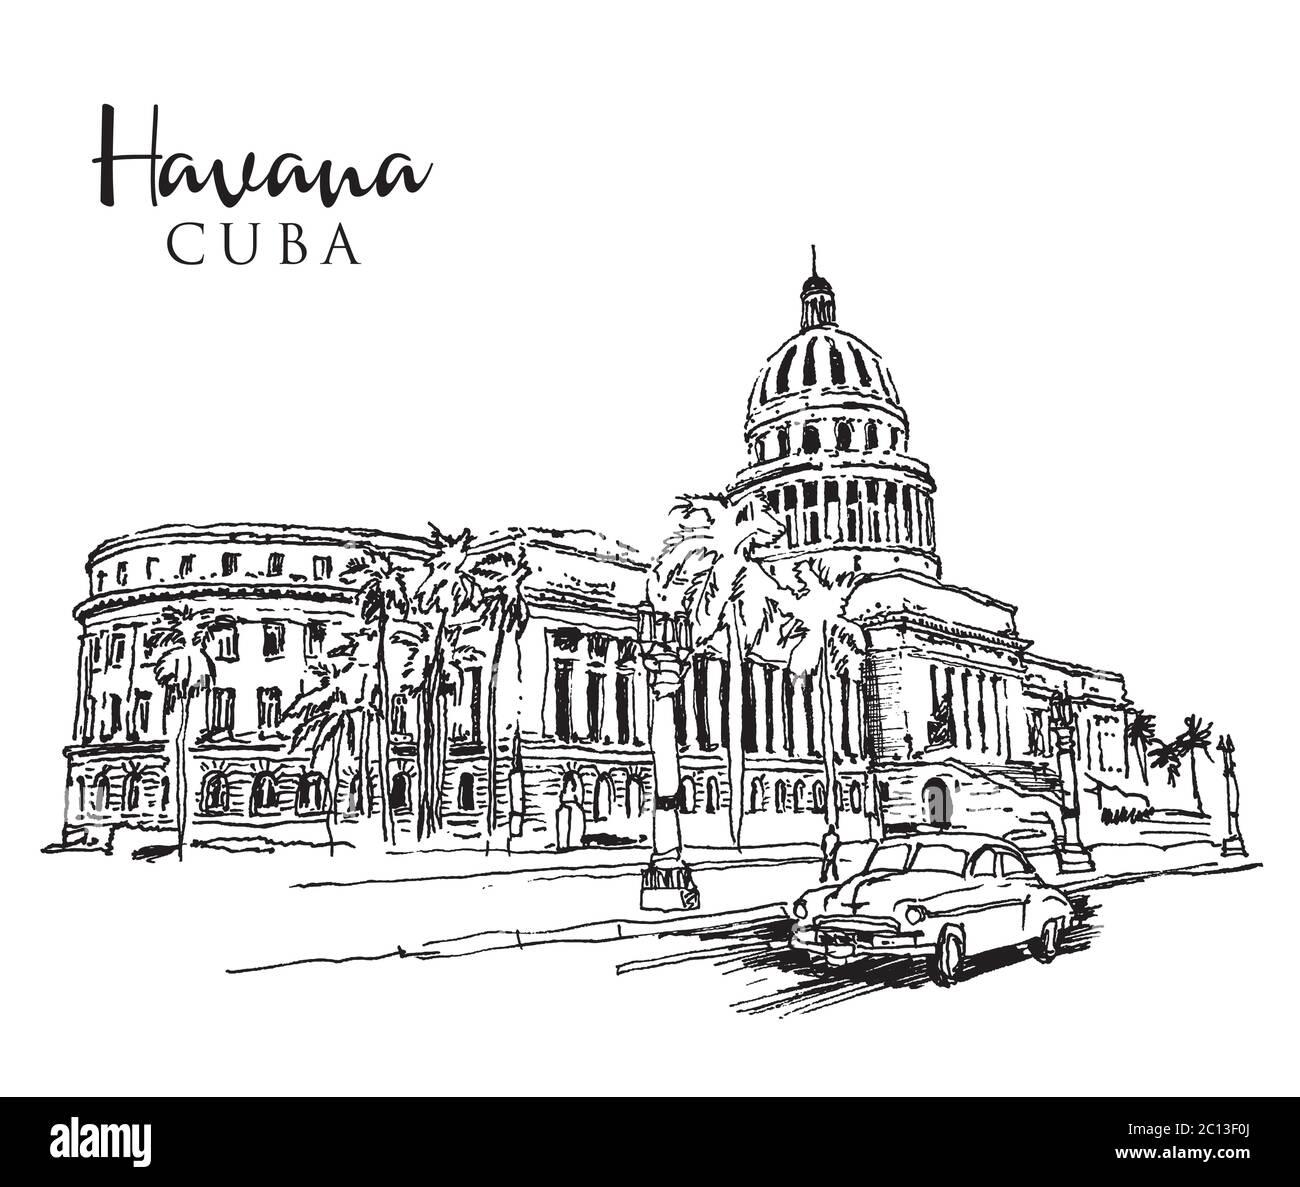 Zeichnung Skizzendarstellung des Kapitolgebäudes oder El Capitolio in Havanna, der kubanischen Hauptstadt Stock Vektor